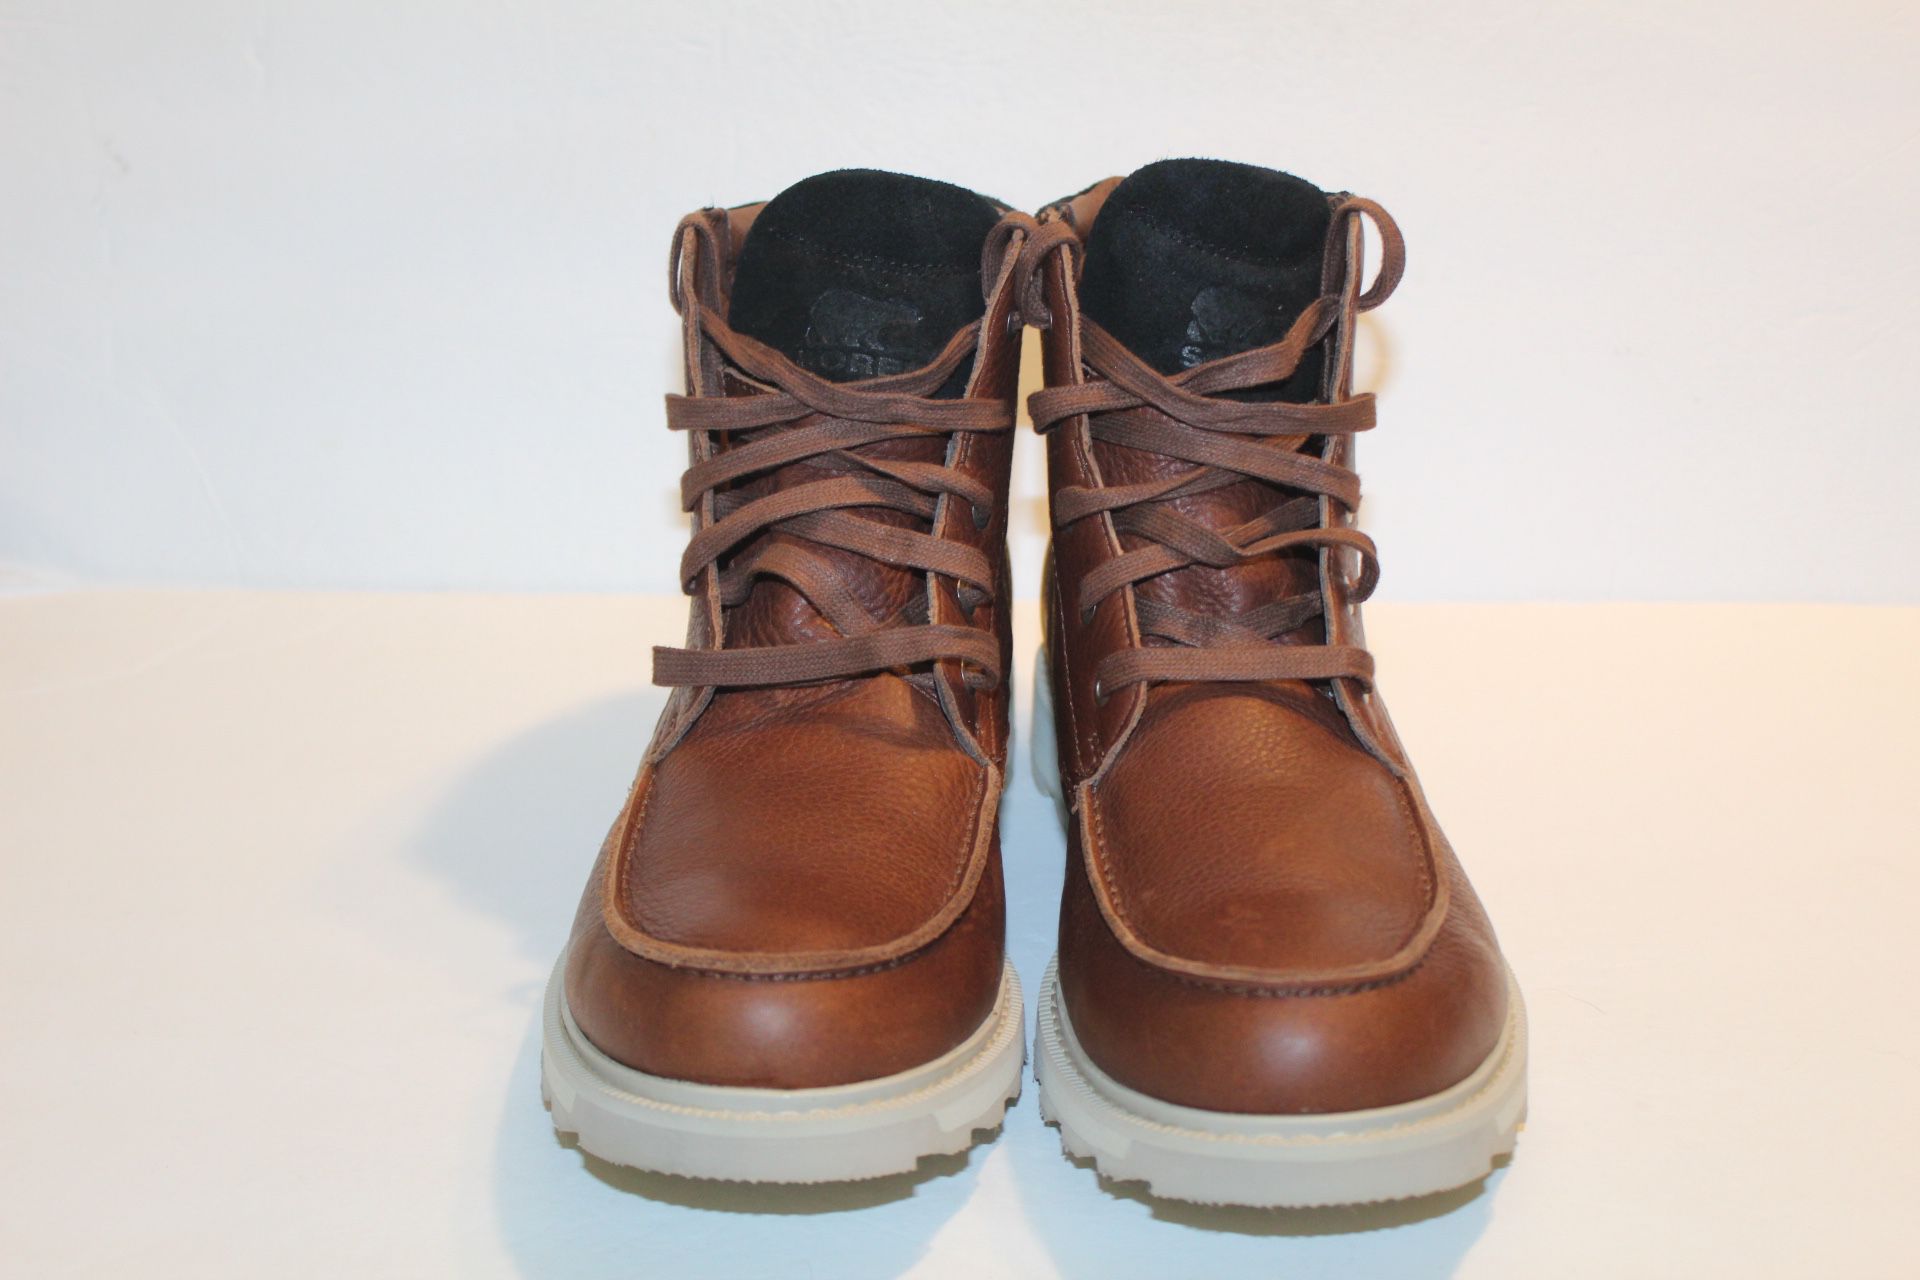 Men’s Sorel Madson II Moc Toe Leather Waterproof Boots Size 11 